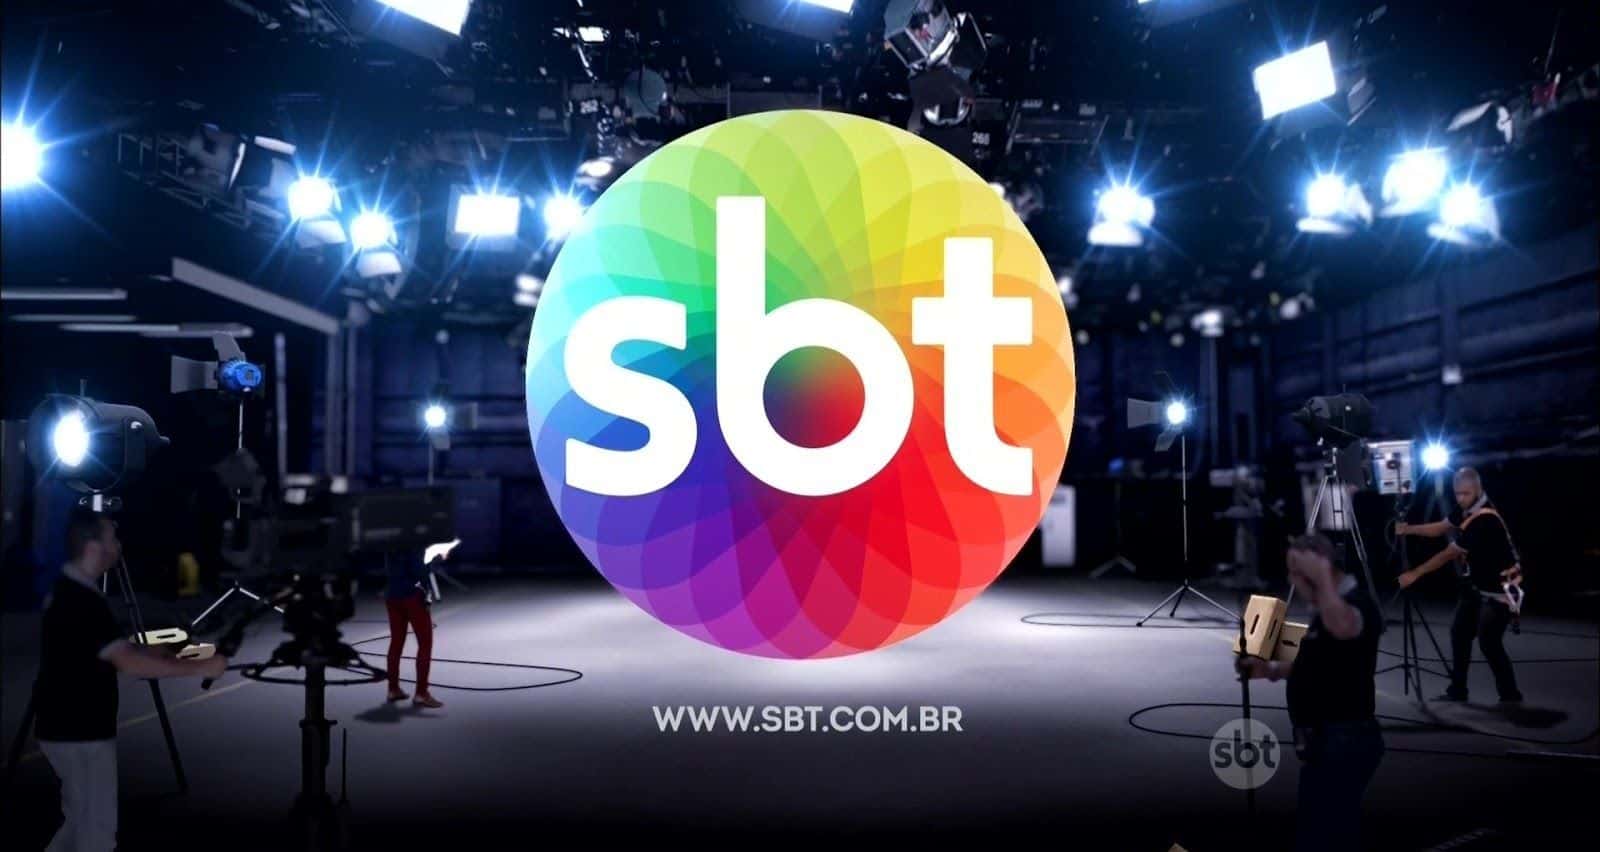 De férias, Silvio Santos cogita lançar novo programa musical no SBT